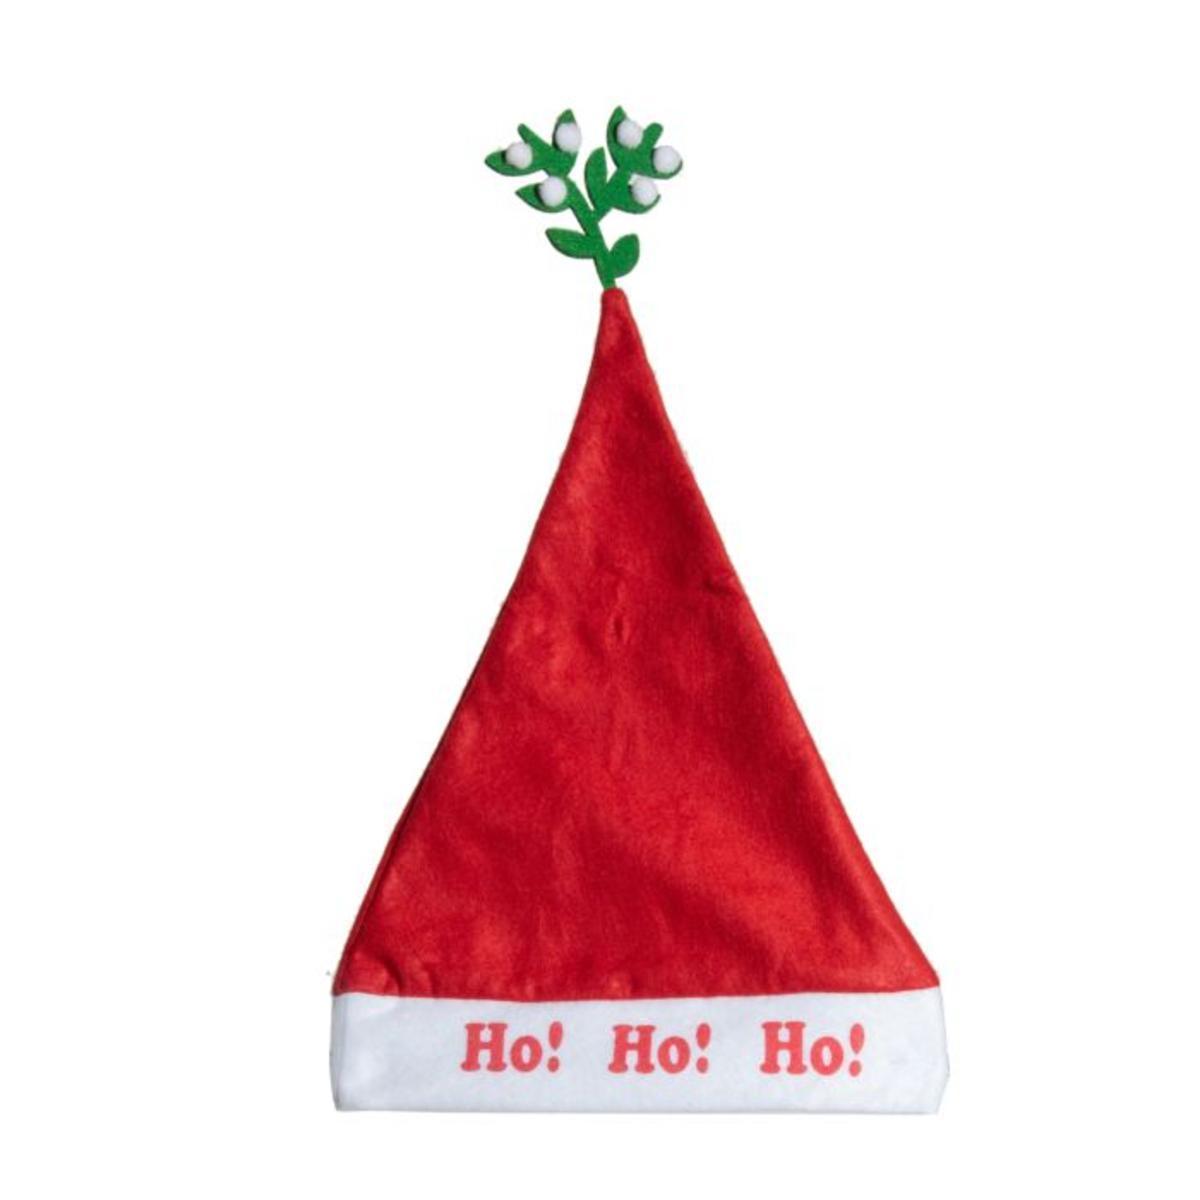 Bonnet de Noël Ho Ho Ho ! - L 47 x l 29 cm - Rouge, blanc